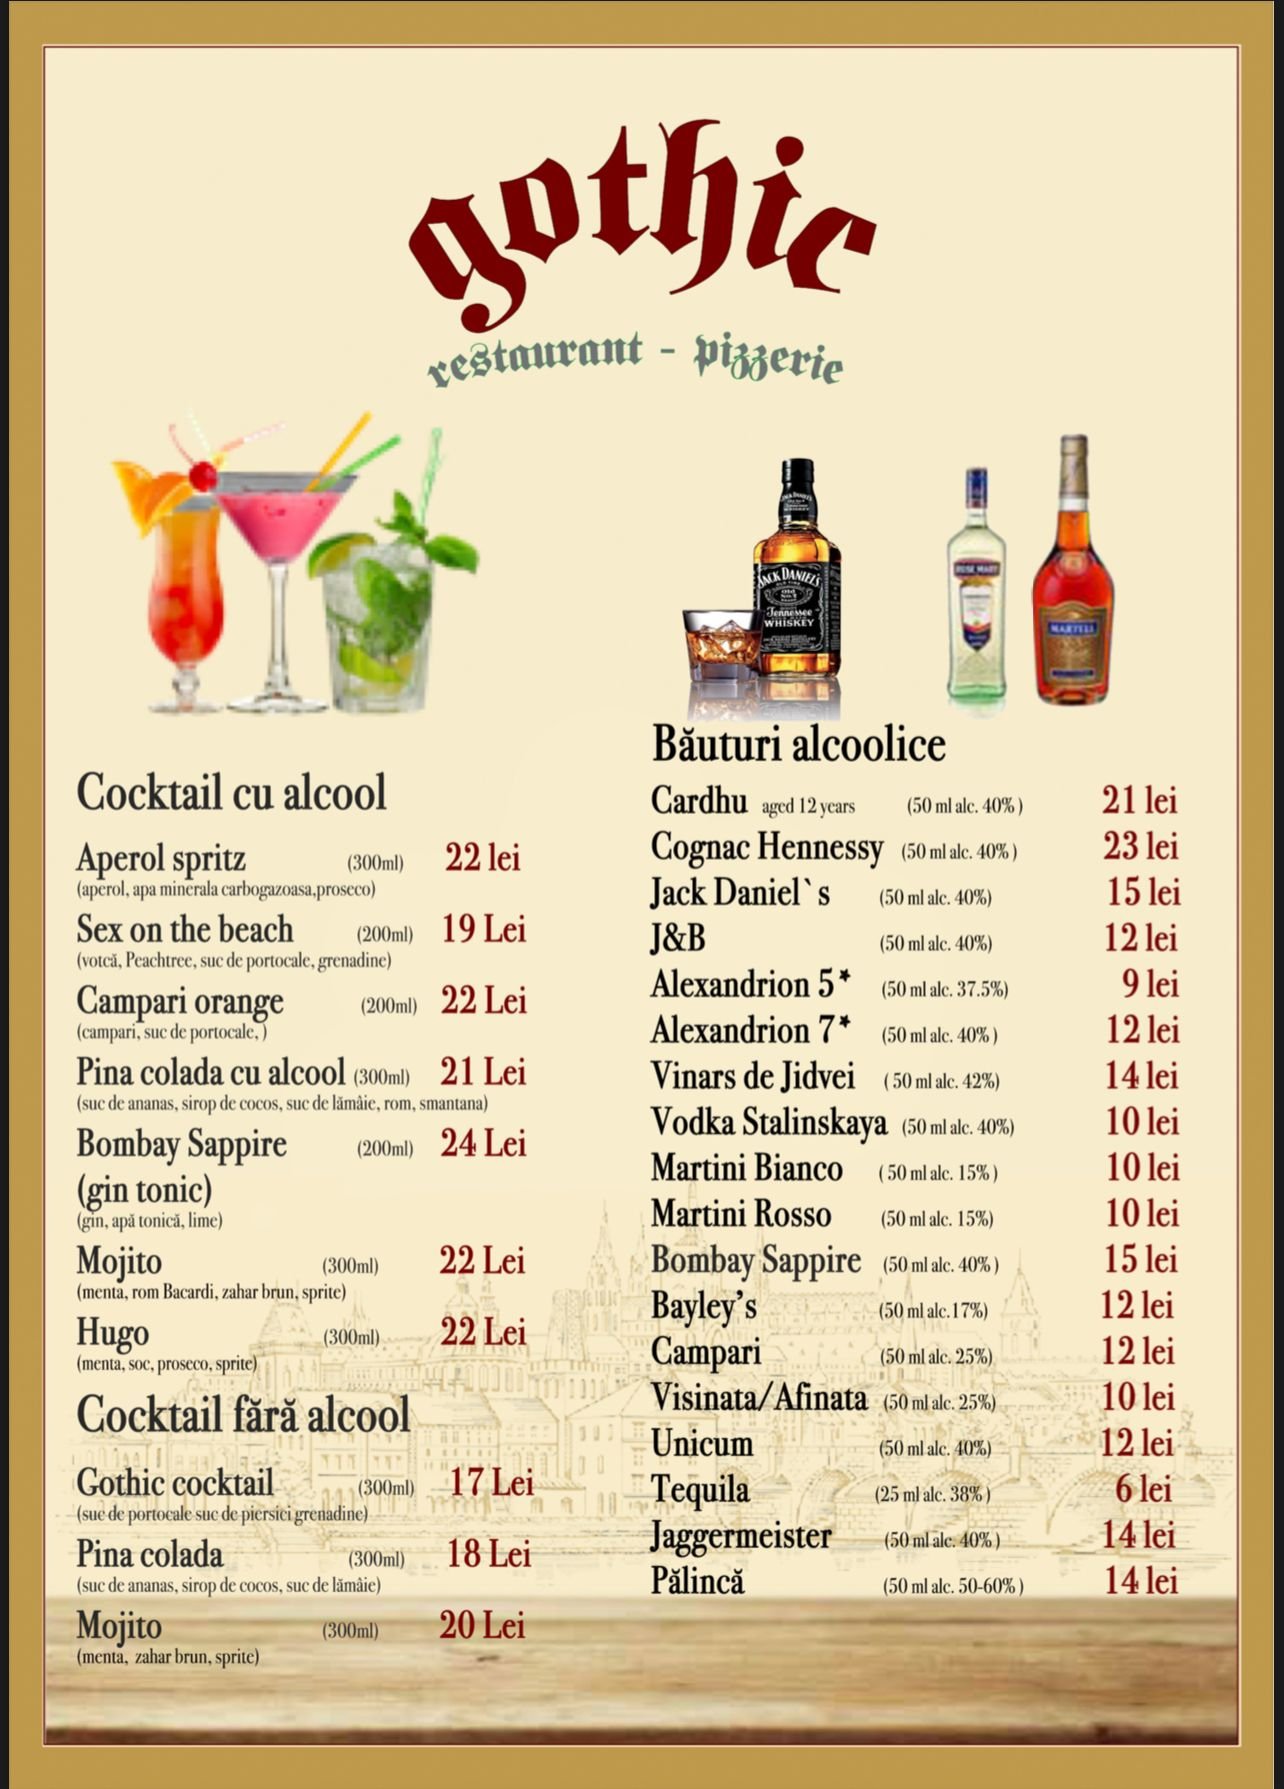 Cocktail-uri cu alcool/Cocktail-uri fara alcool/Bauturi alcoolice